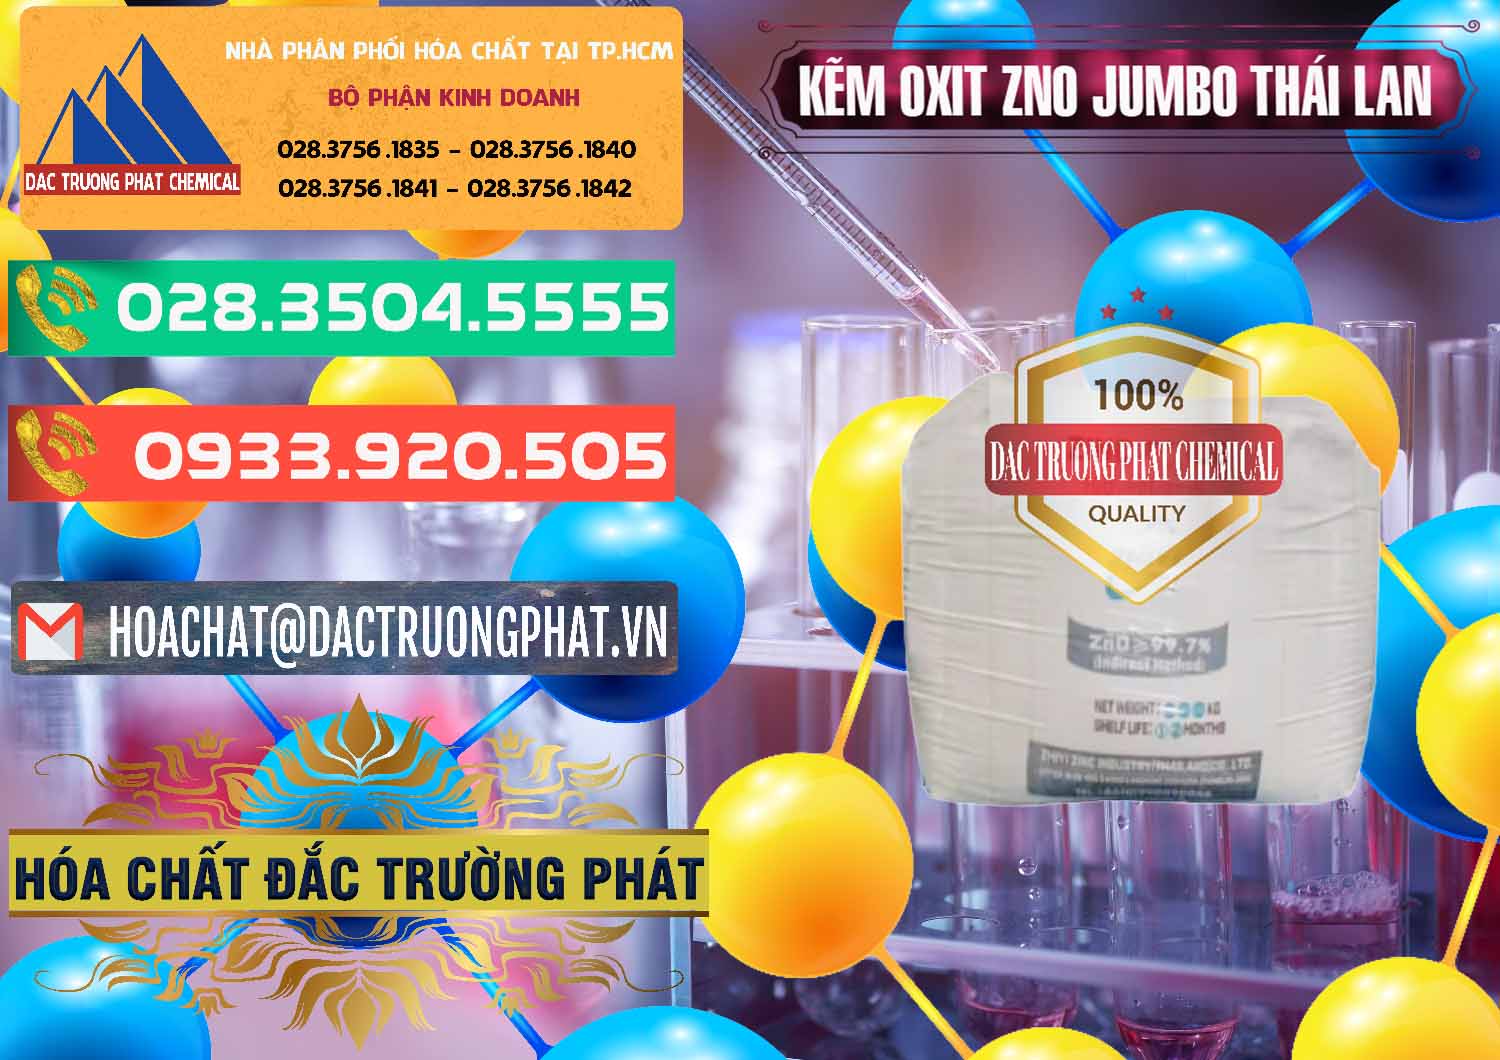 Công ty chuyên cung ứng _ bán Zinc Oxide - Bột Kẽm Oxit ZNO Jumbo Bành Thái Lan Thailand - 0370 - Phân phối ( kinh doanh ) hóa chất tại TP.HCM - congtyhoachat.com.vn